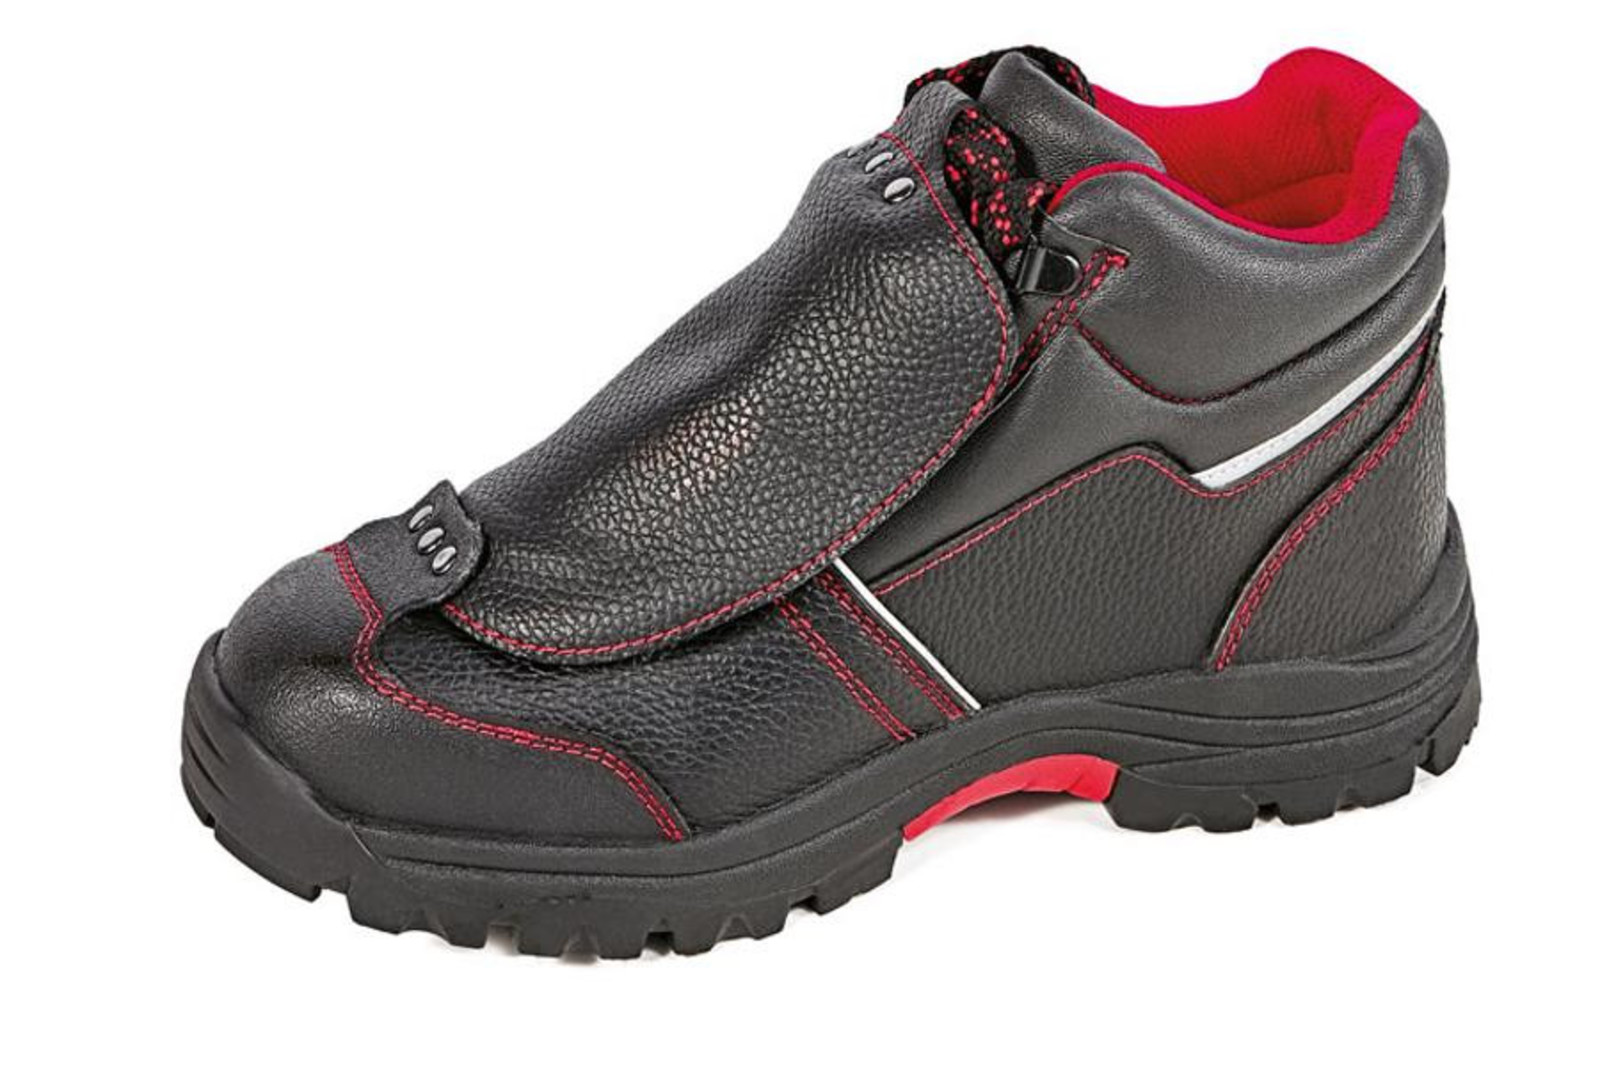 Bezpečnostná členková obuv Cerva Steeler Metatarsal S3 HRO M SRA  - veľkosť: 48, farba: čierna